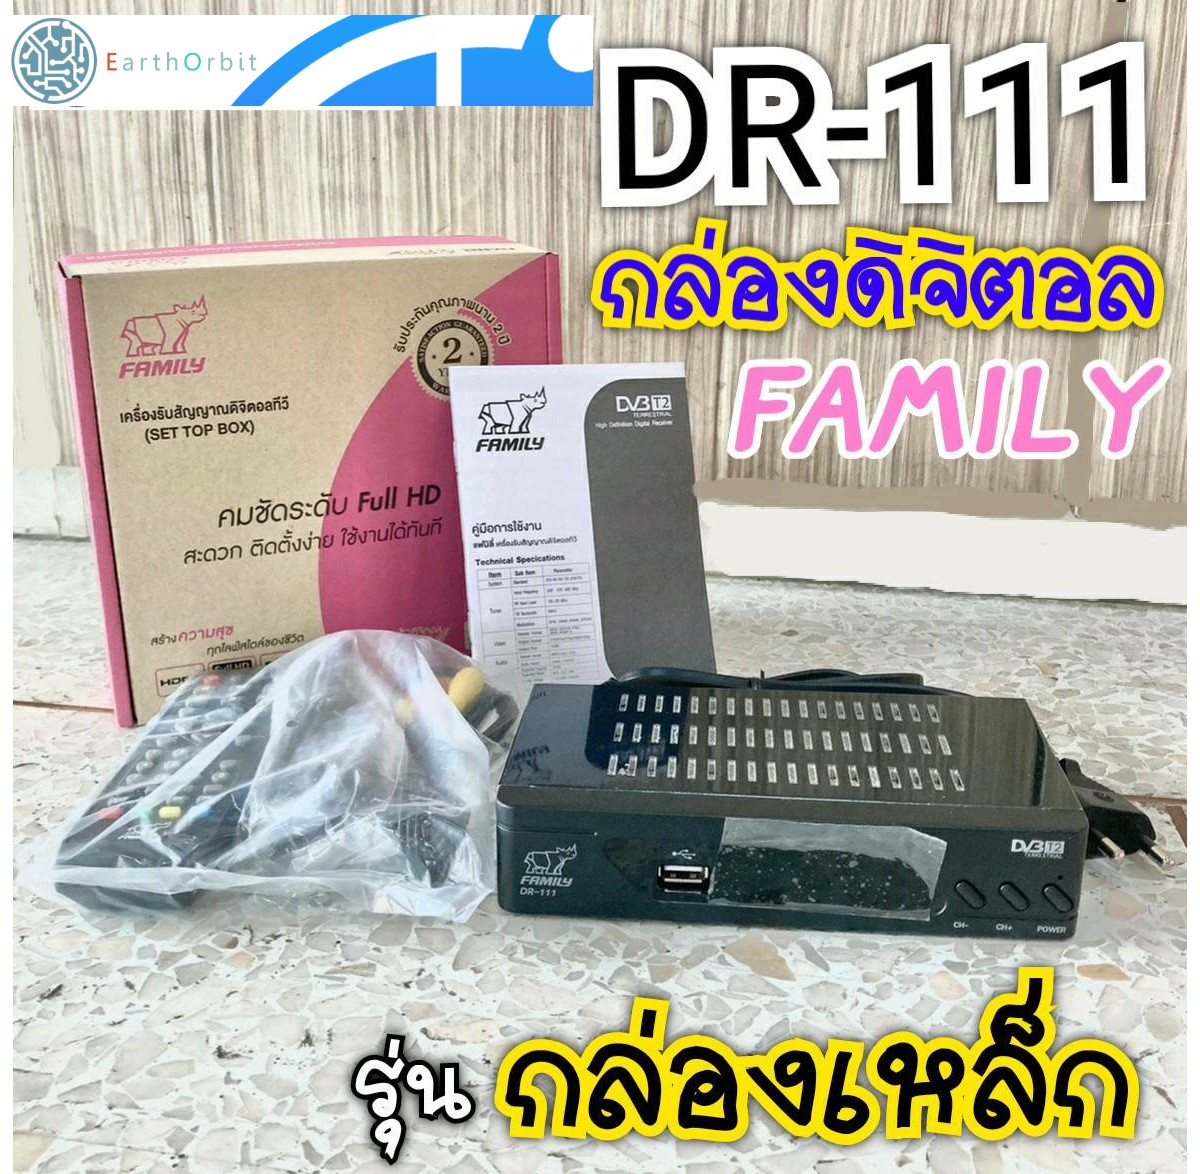 สินค้าขายดี📮 กล่องทีวีดิจิตอล แฟมิลี่ สีชมพู 📮 ของแท้ ส่งเร็วทุกวัน Digital Box Family DR-111 กล่องดิจิตอล ดิจิตอลทีวี